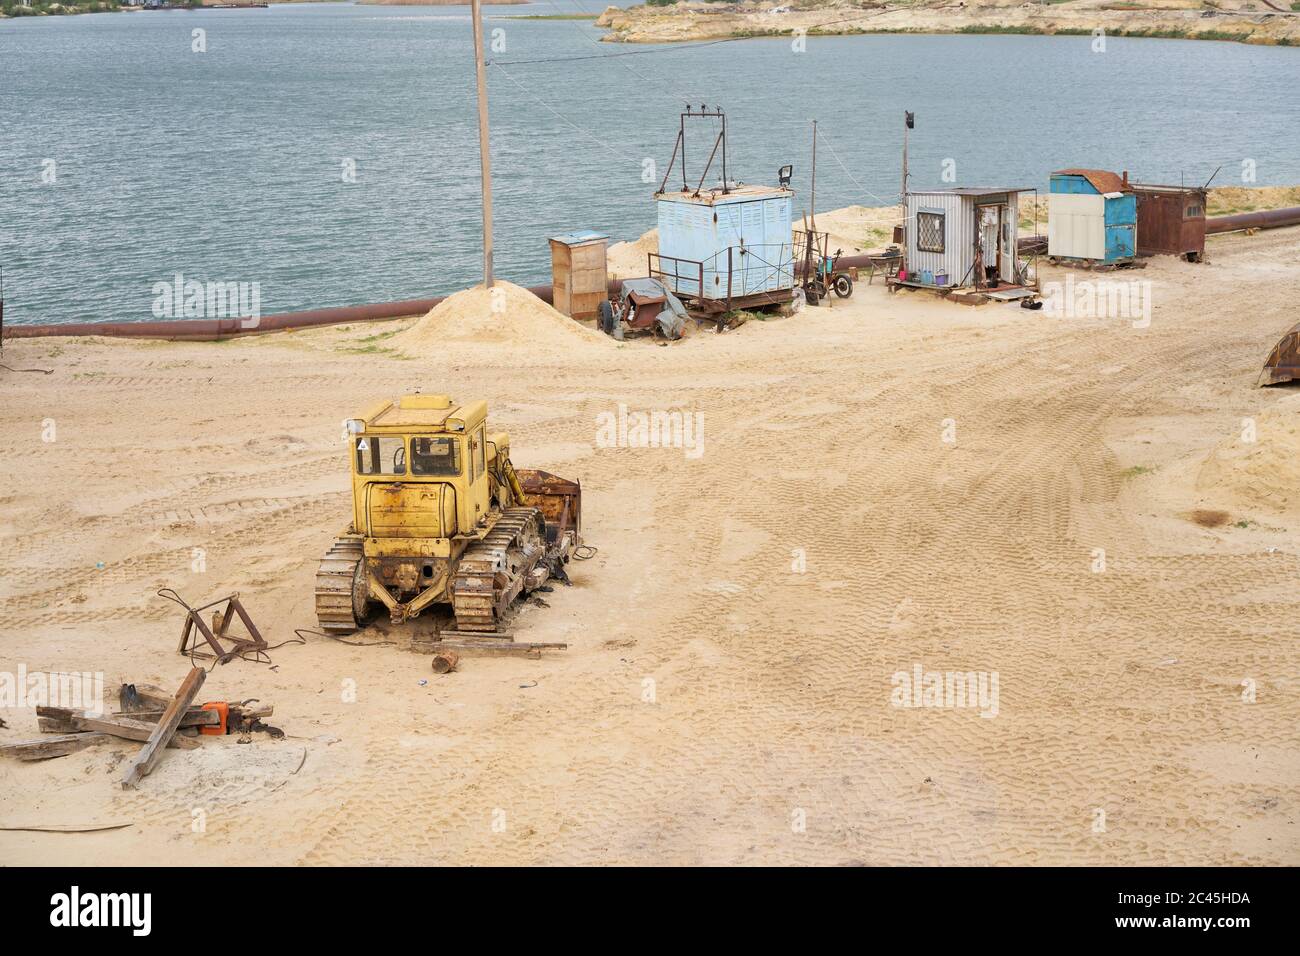 Sandbruch Bergbau Industrie Ausrüstung Bagger Traktor stehend Sand Land in der Nähe See Wasser Industrielle Aktivität Mine Betrieb Sommer sonnigen Tag. Ökologie Problem nicht erneuerbare Ressourcen der Erde Stockfoto